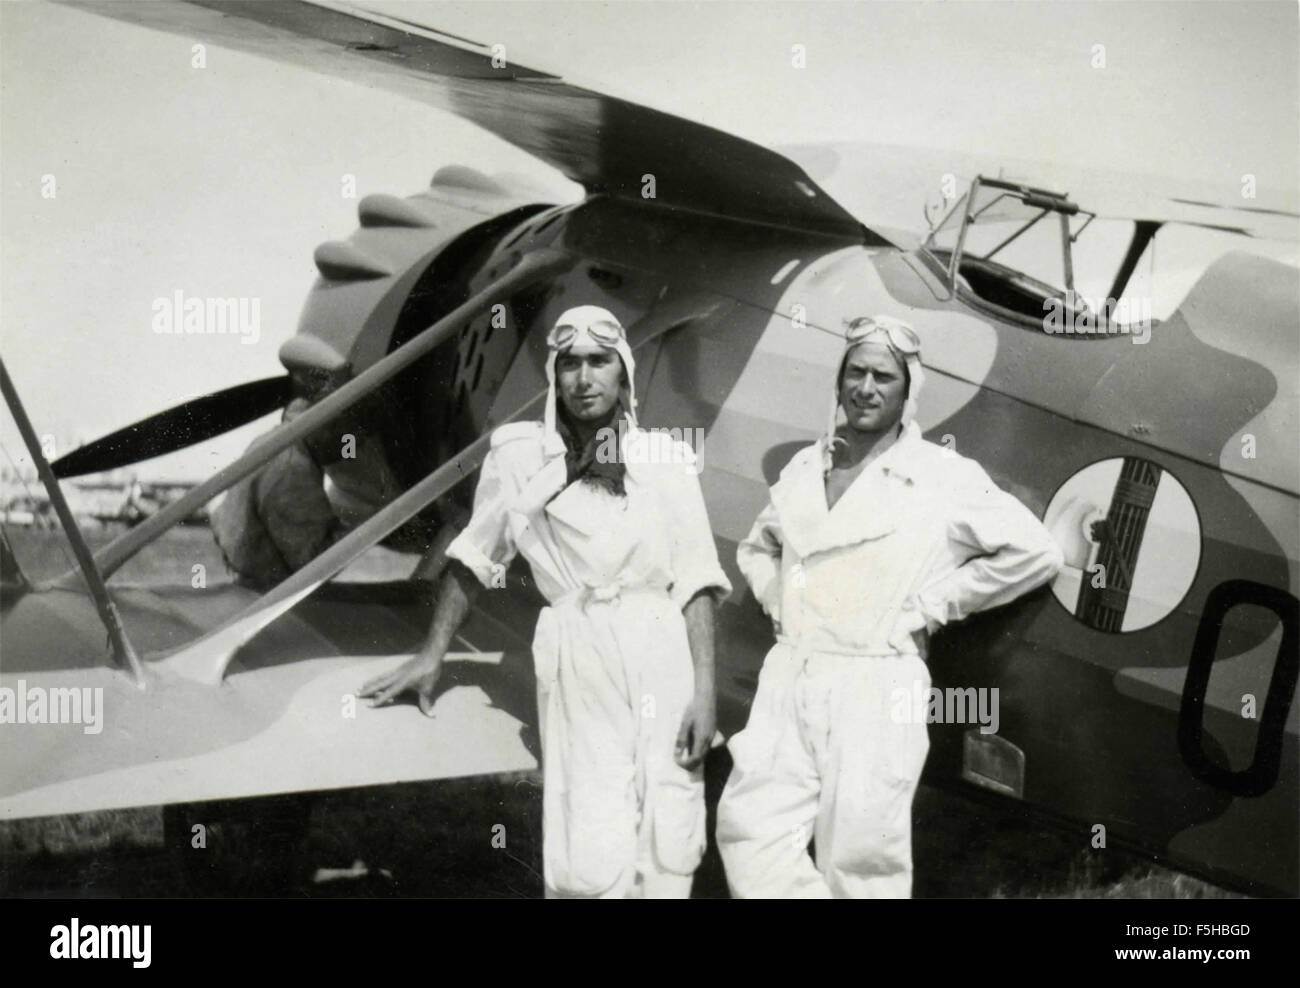 Zwei Flieger im weißen Anzug neben einem Flugzeug mit einem Emblem des Strahls, Italien Stockfoto